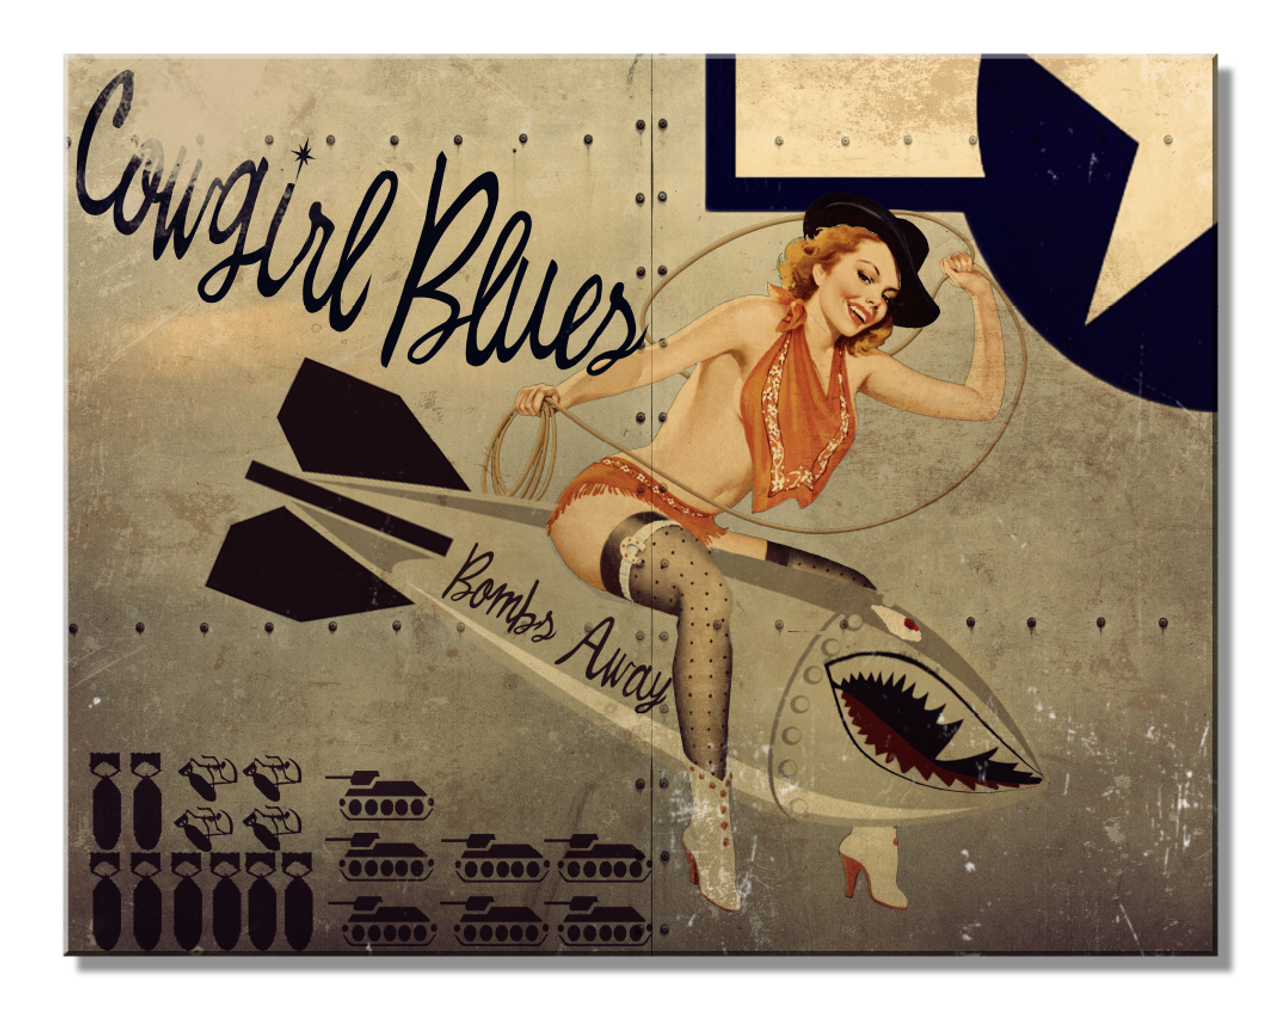 Cowgirl Blues 16" x 12.5" Metal Tin Sign - 2758